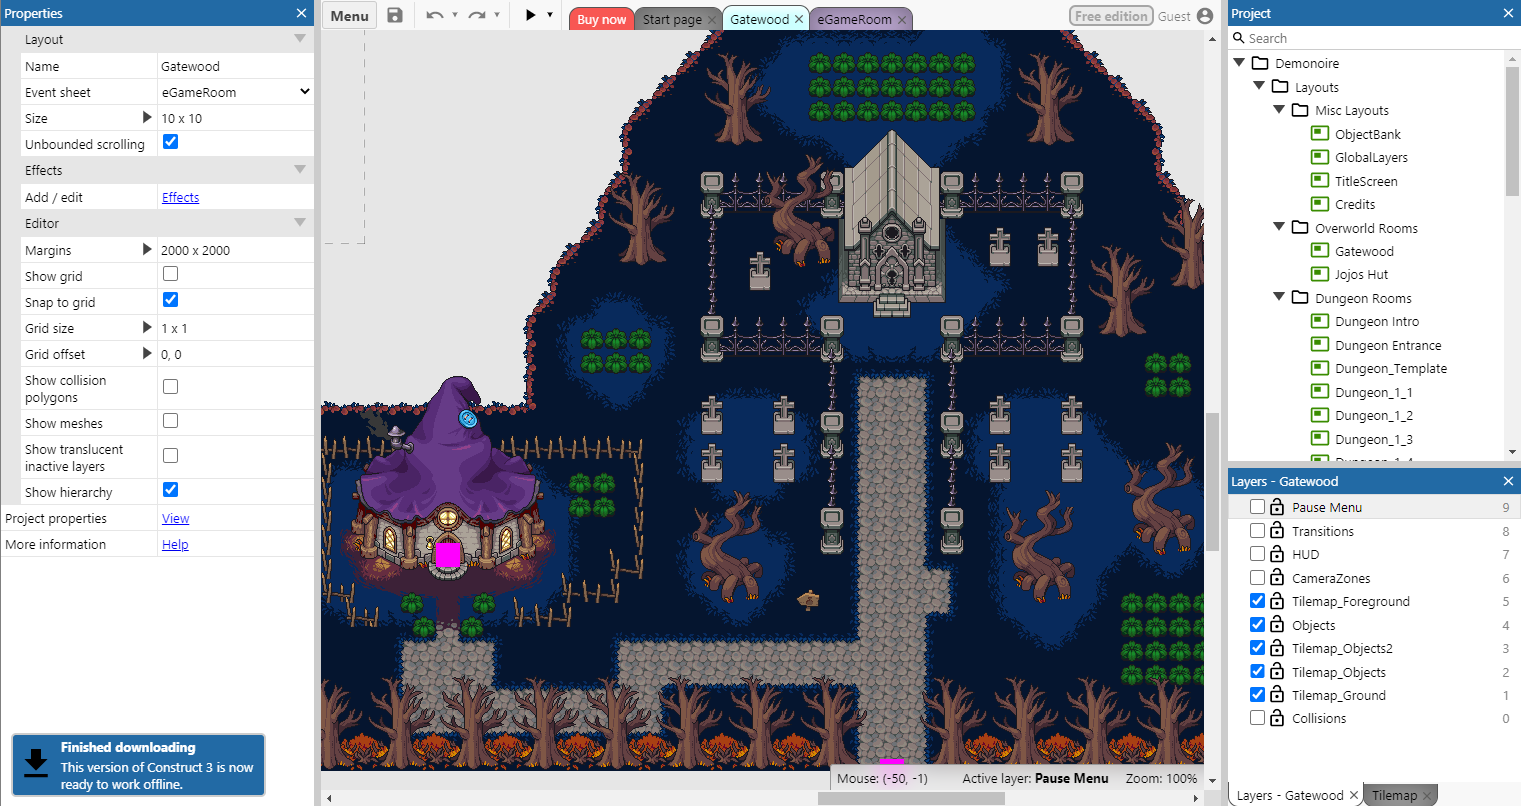 Screenshot of Demonoire sample game open in Construct 3